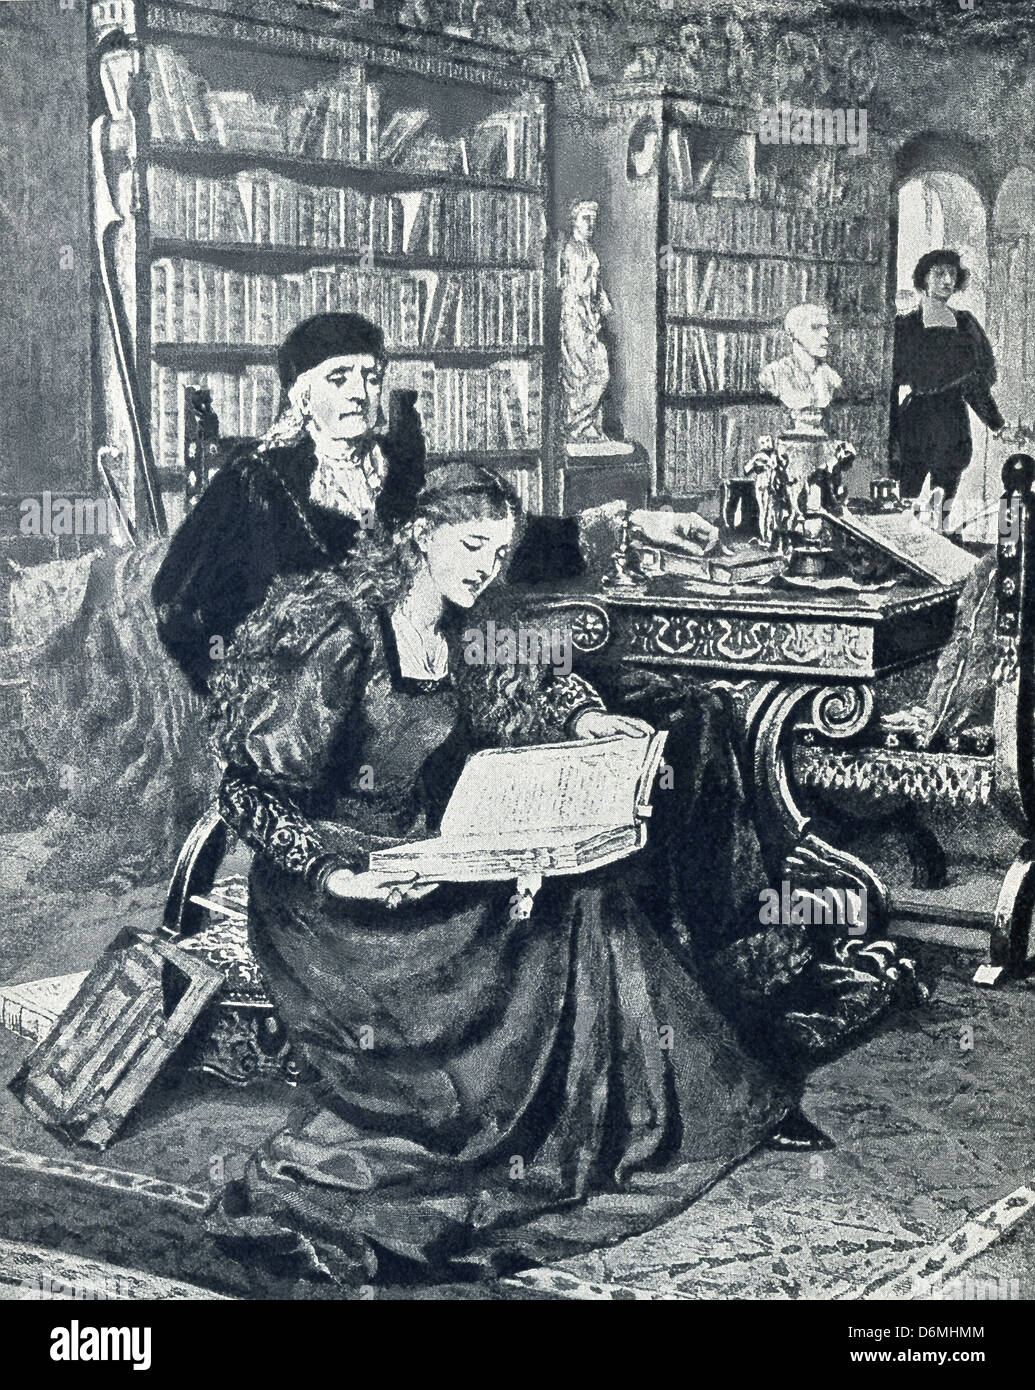 Romanziere inglese George Eliot (Mary Anne Evans) ha scritto il romanzo Romola nel 1862-63, impostare nel XV secolo (Rinascimento) Firenze. Foto Stock